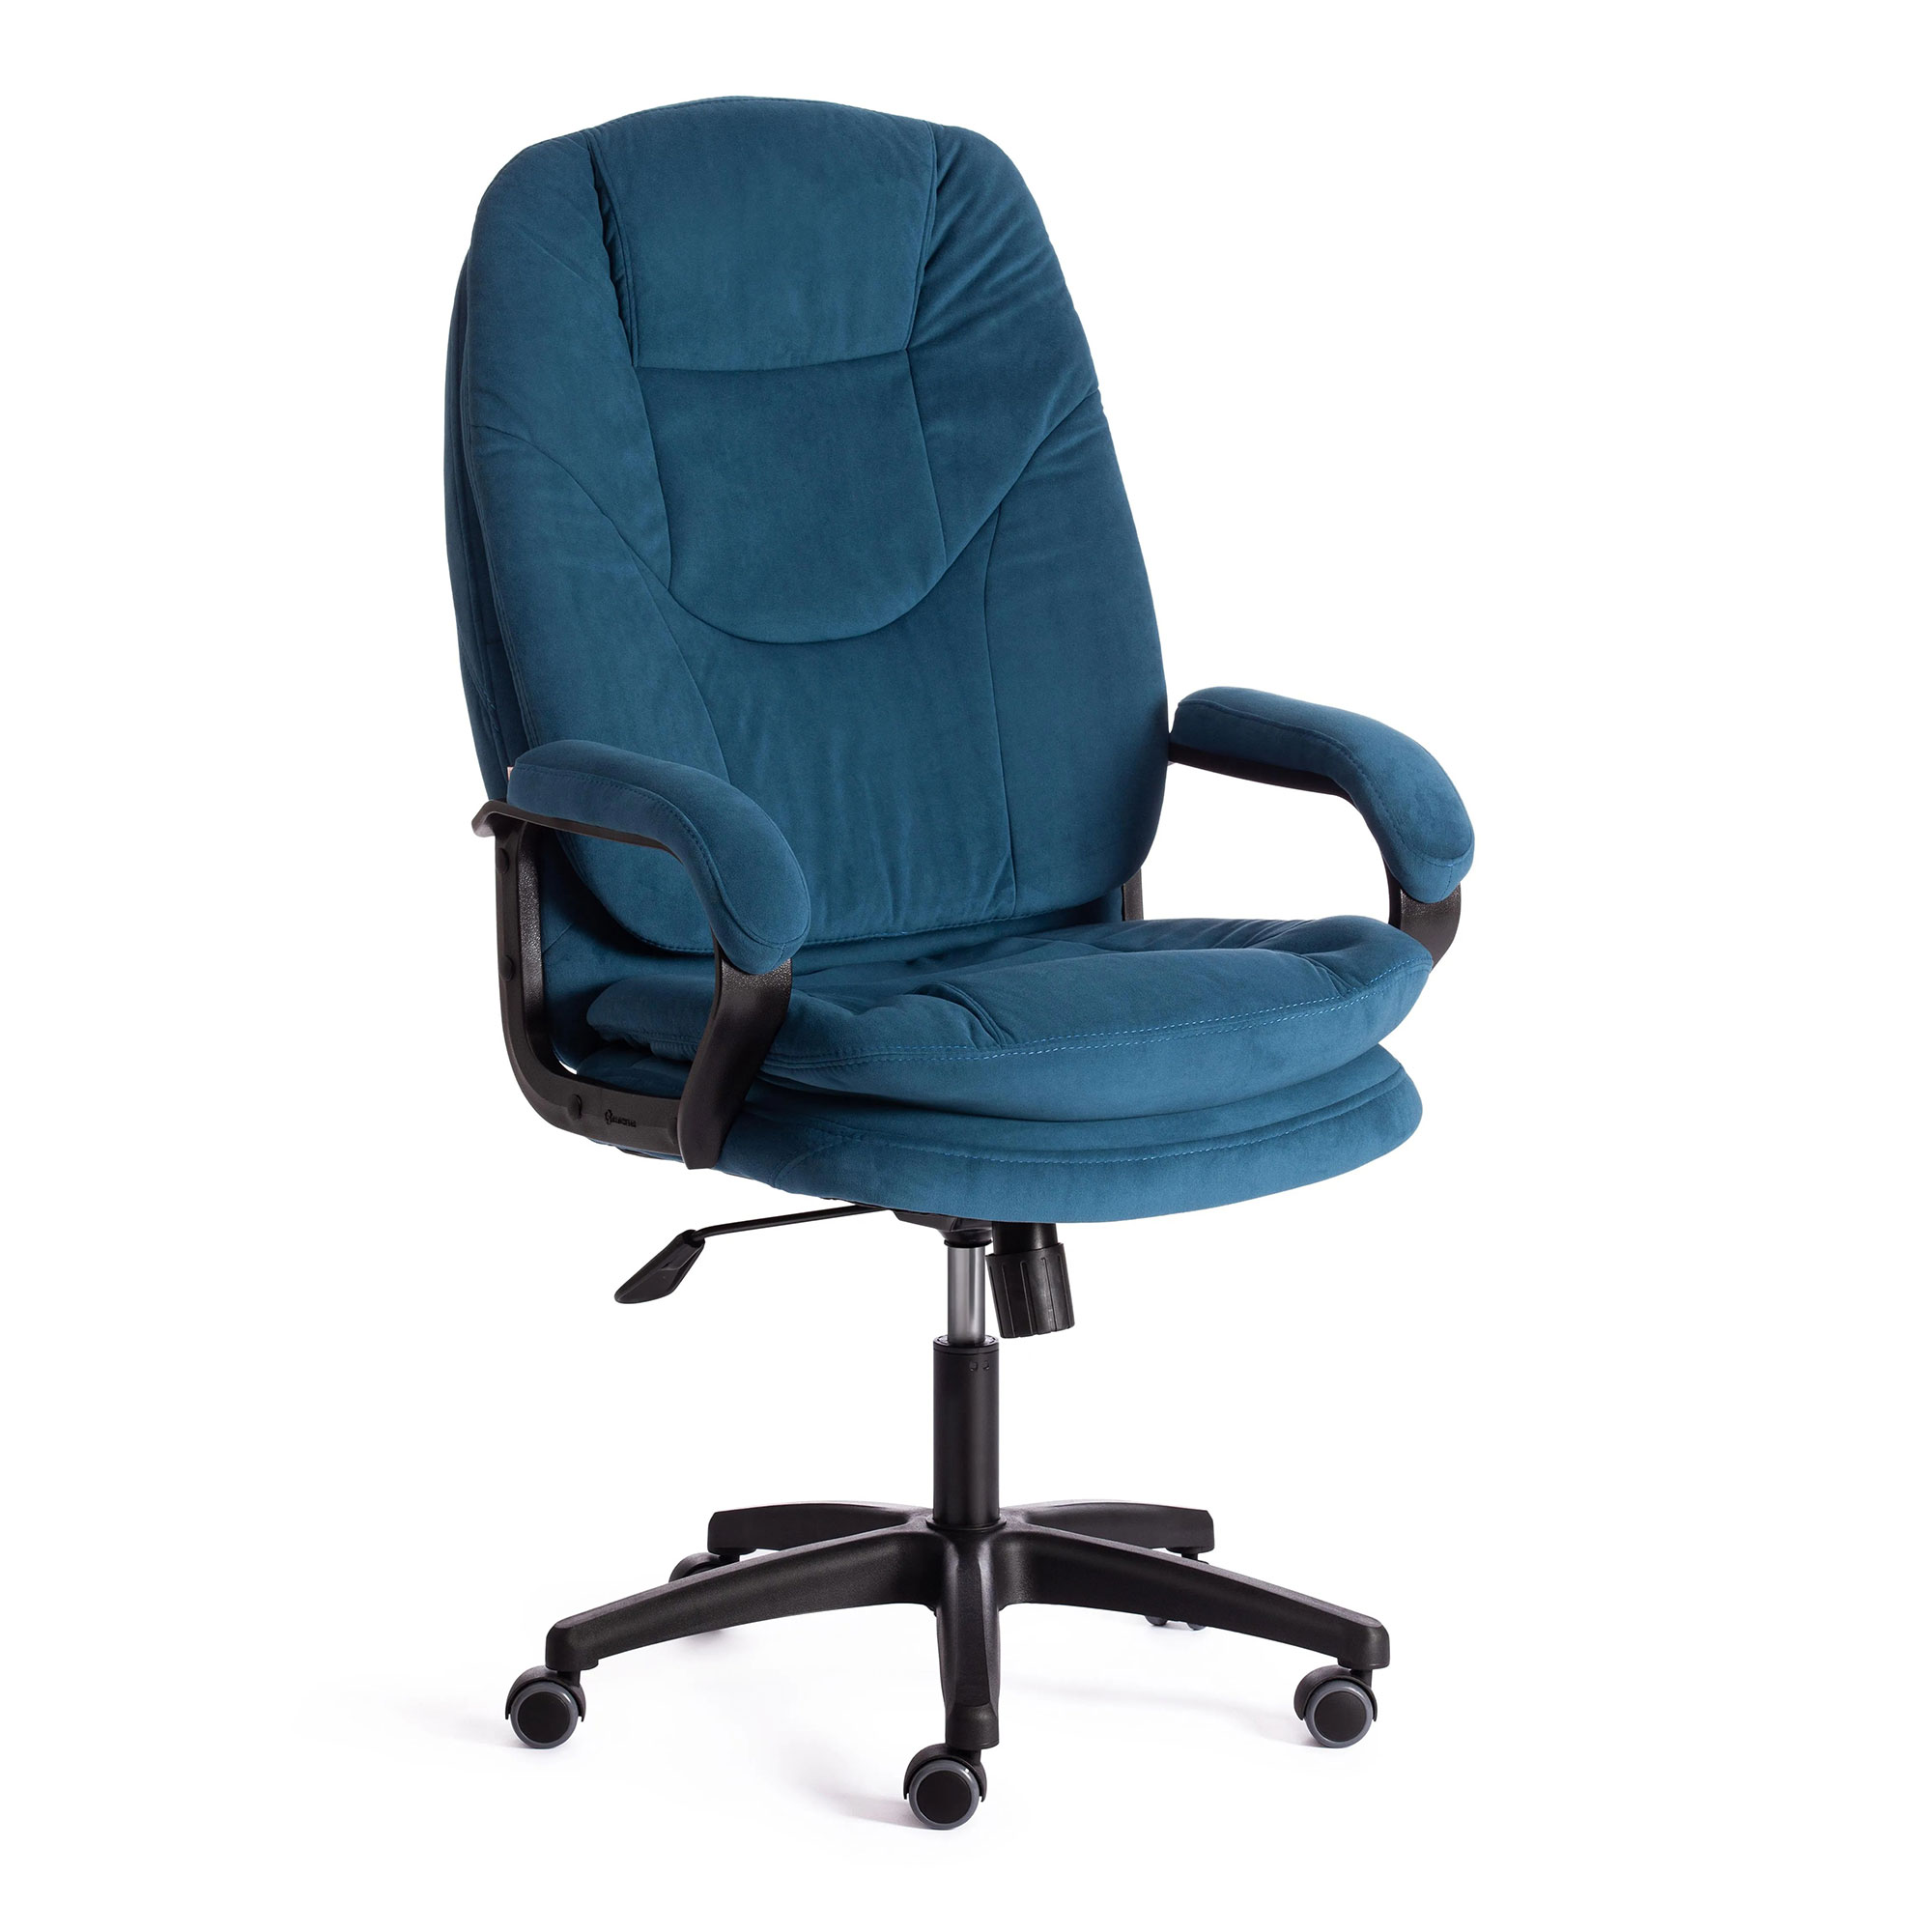 компьютерное кресло tc comfort синее 66х46х133 см 19387 Компьютерное кресло TC Comfort синее 66х46х133 см (19387)